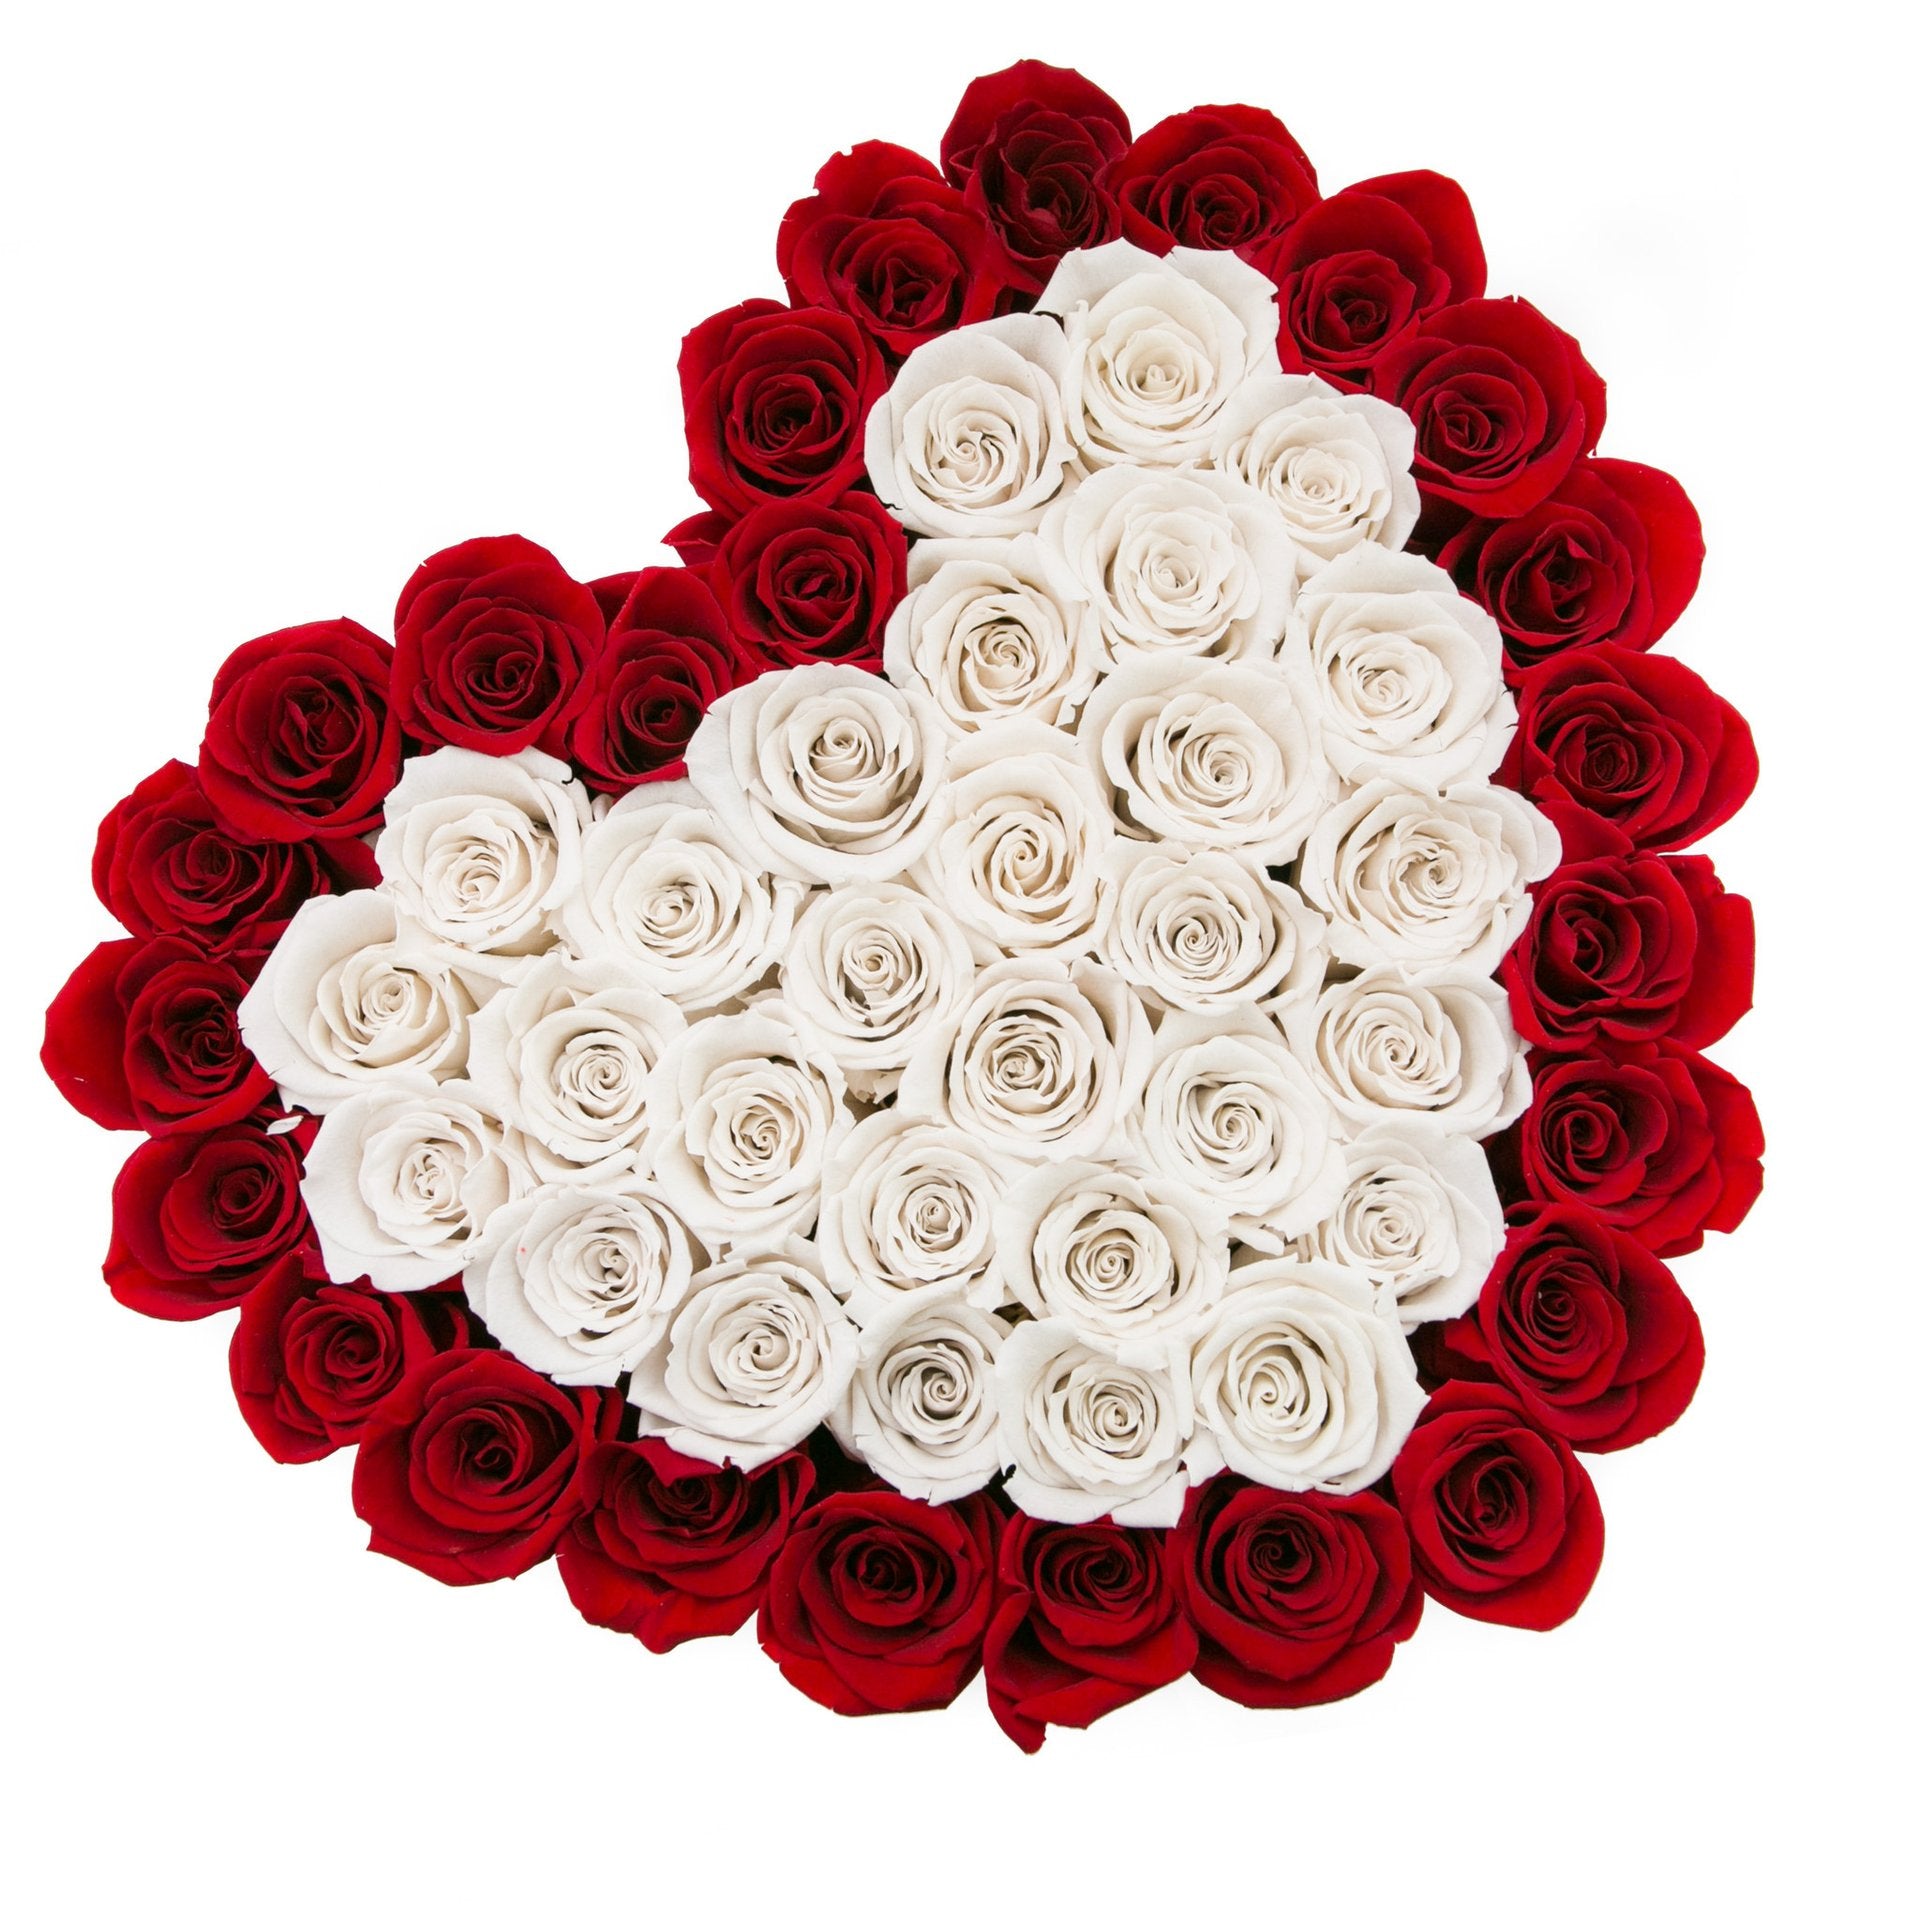 Inimă din trandafiri naturali roșii și albi